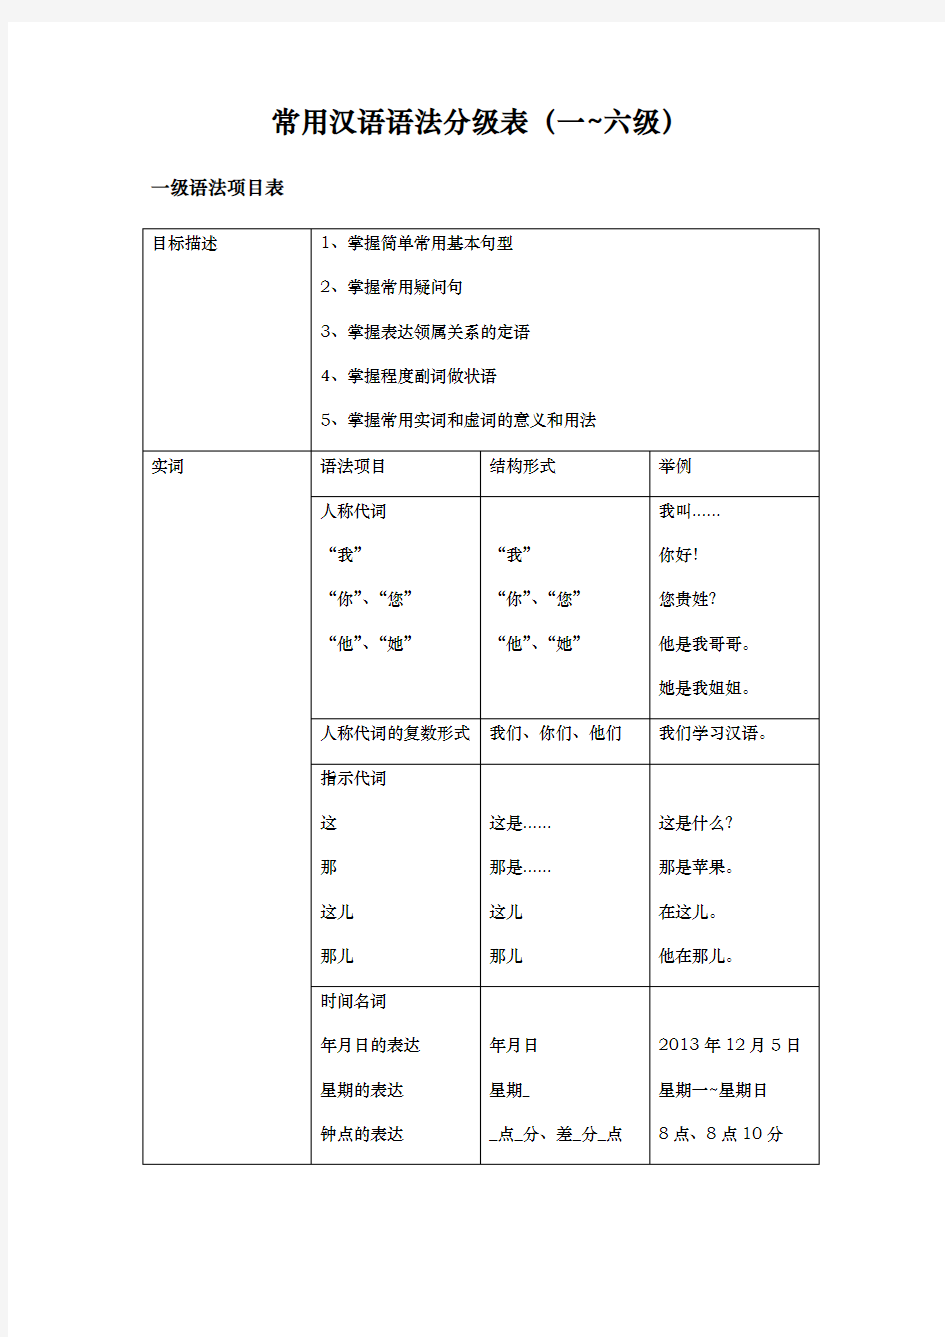 常用汉语语法分级表修订版资料全